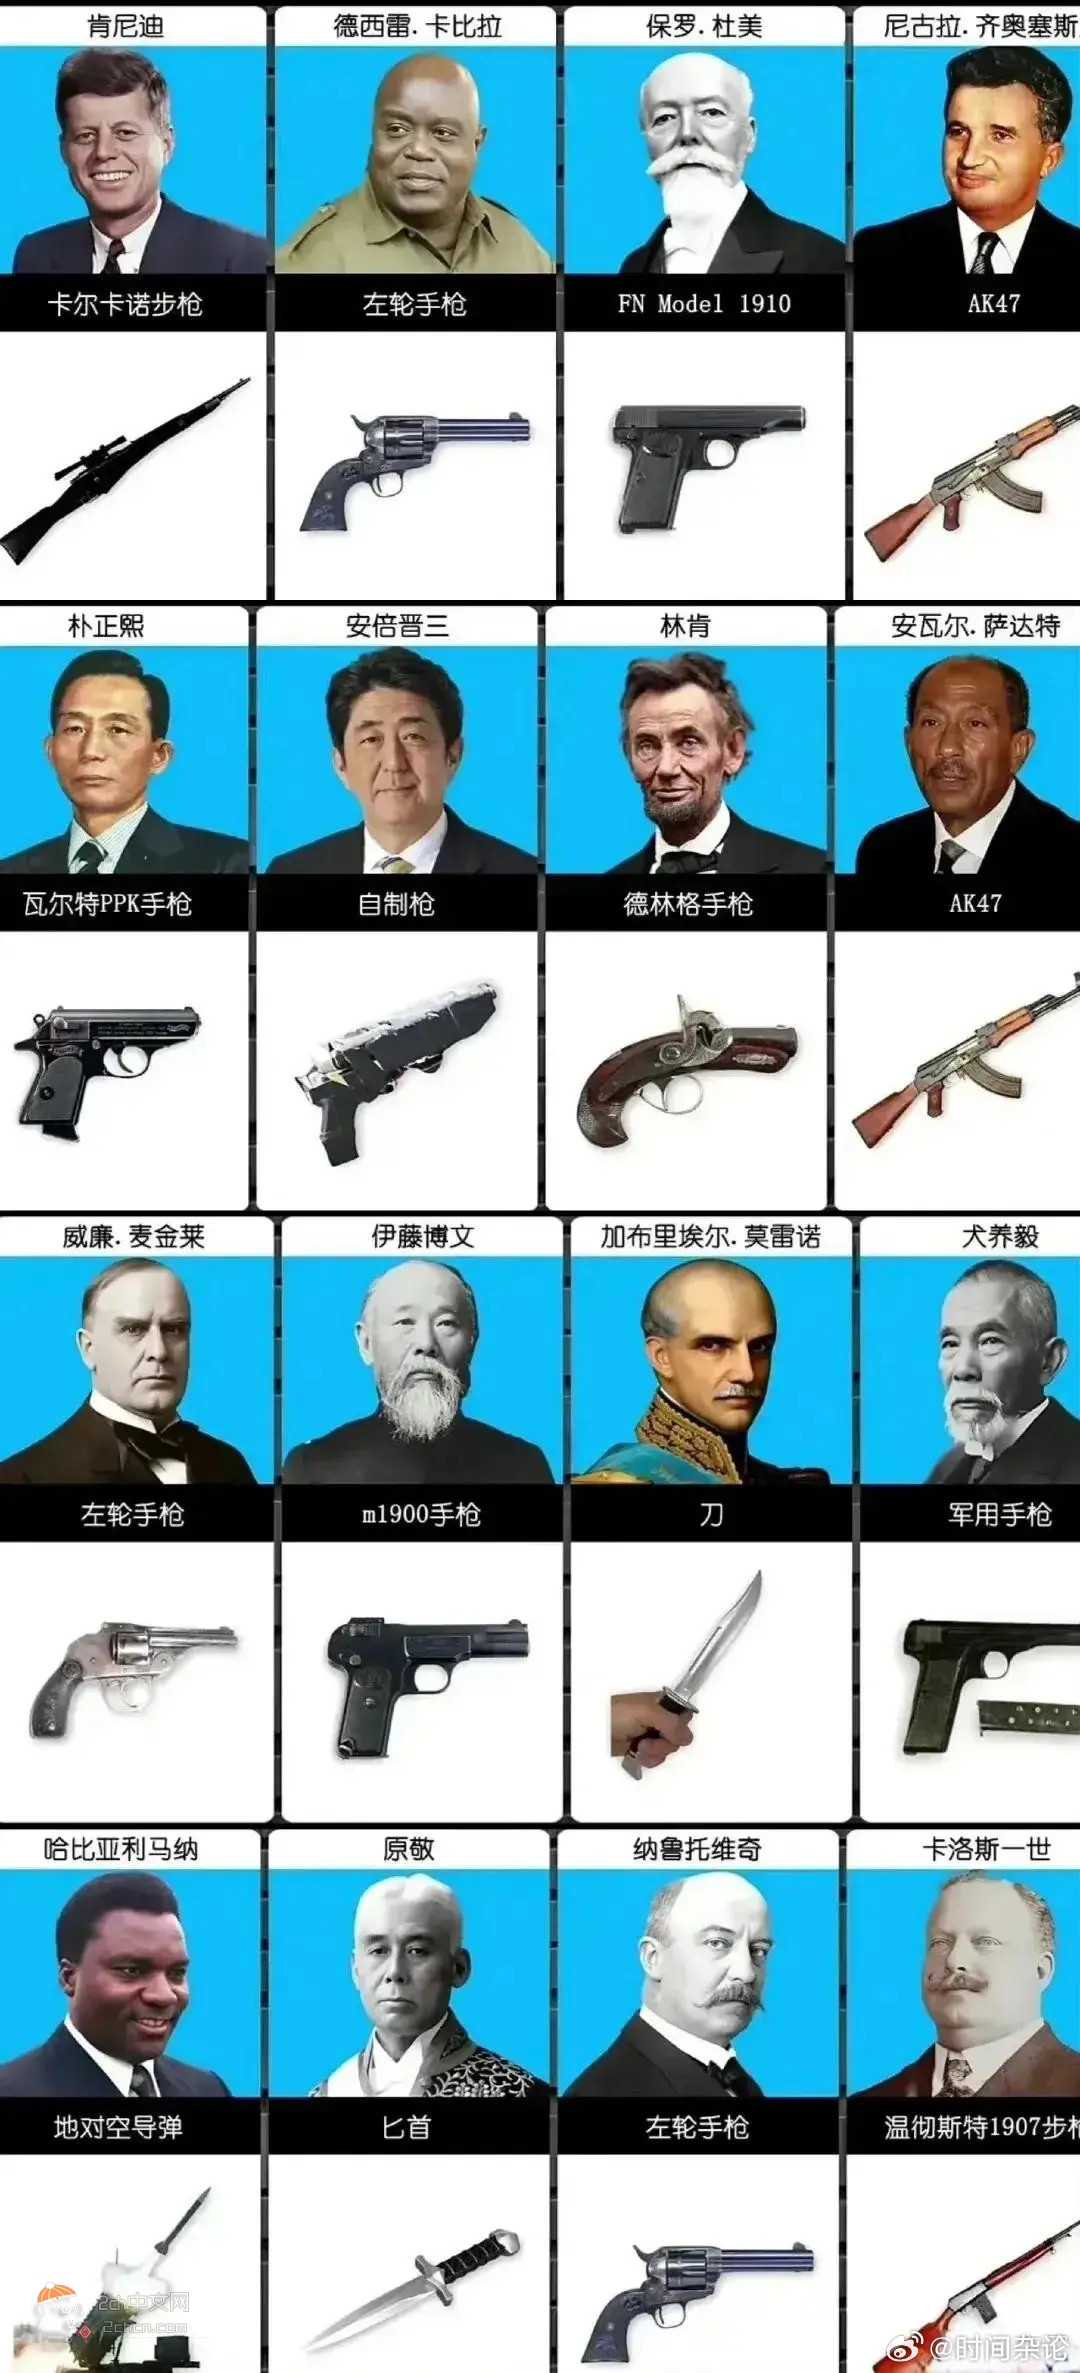 2ch：中国人「整理了被暗杀的世界重要人物和凶器列表」